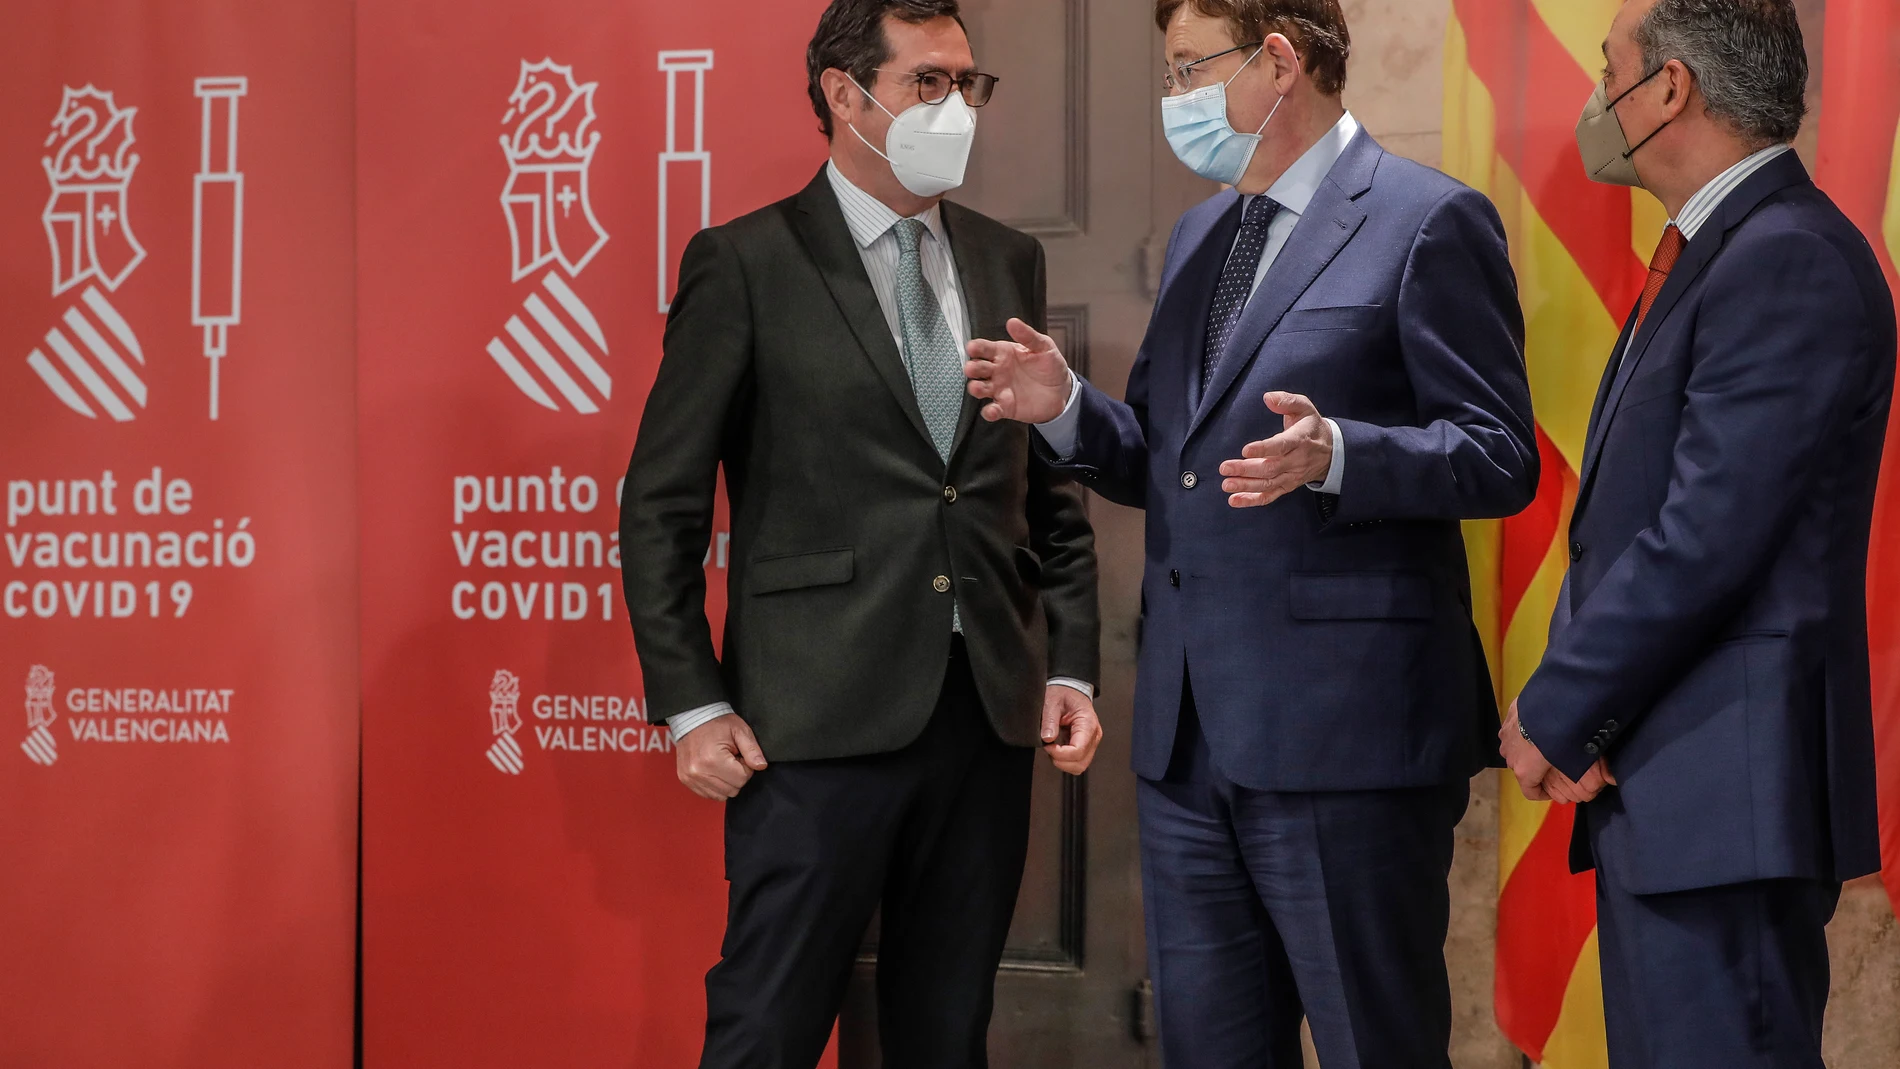 El presidente de la Generalitat, Ximo Puig (centro), acompañado de los presidentes de la CEOE, Antonio Garamendi (i), y de la CEV, Salvador Navarro (d), durante el acto